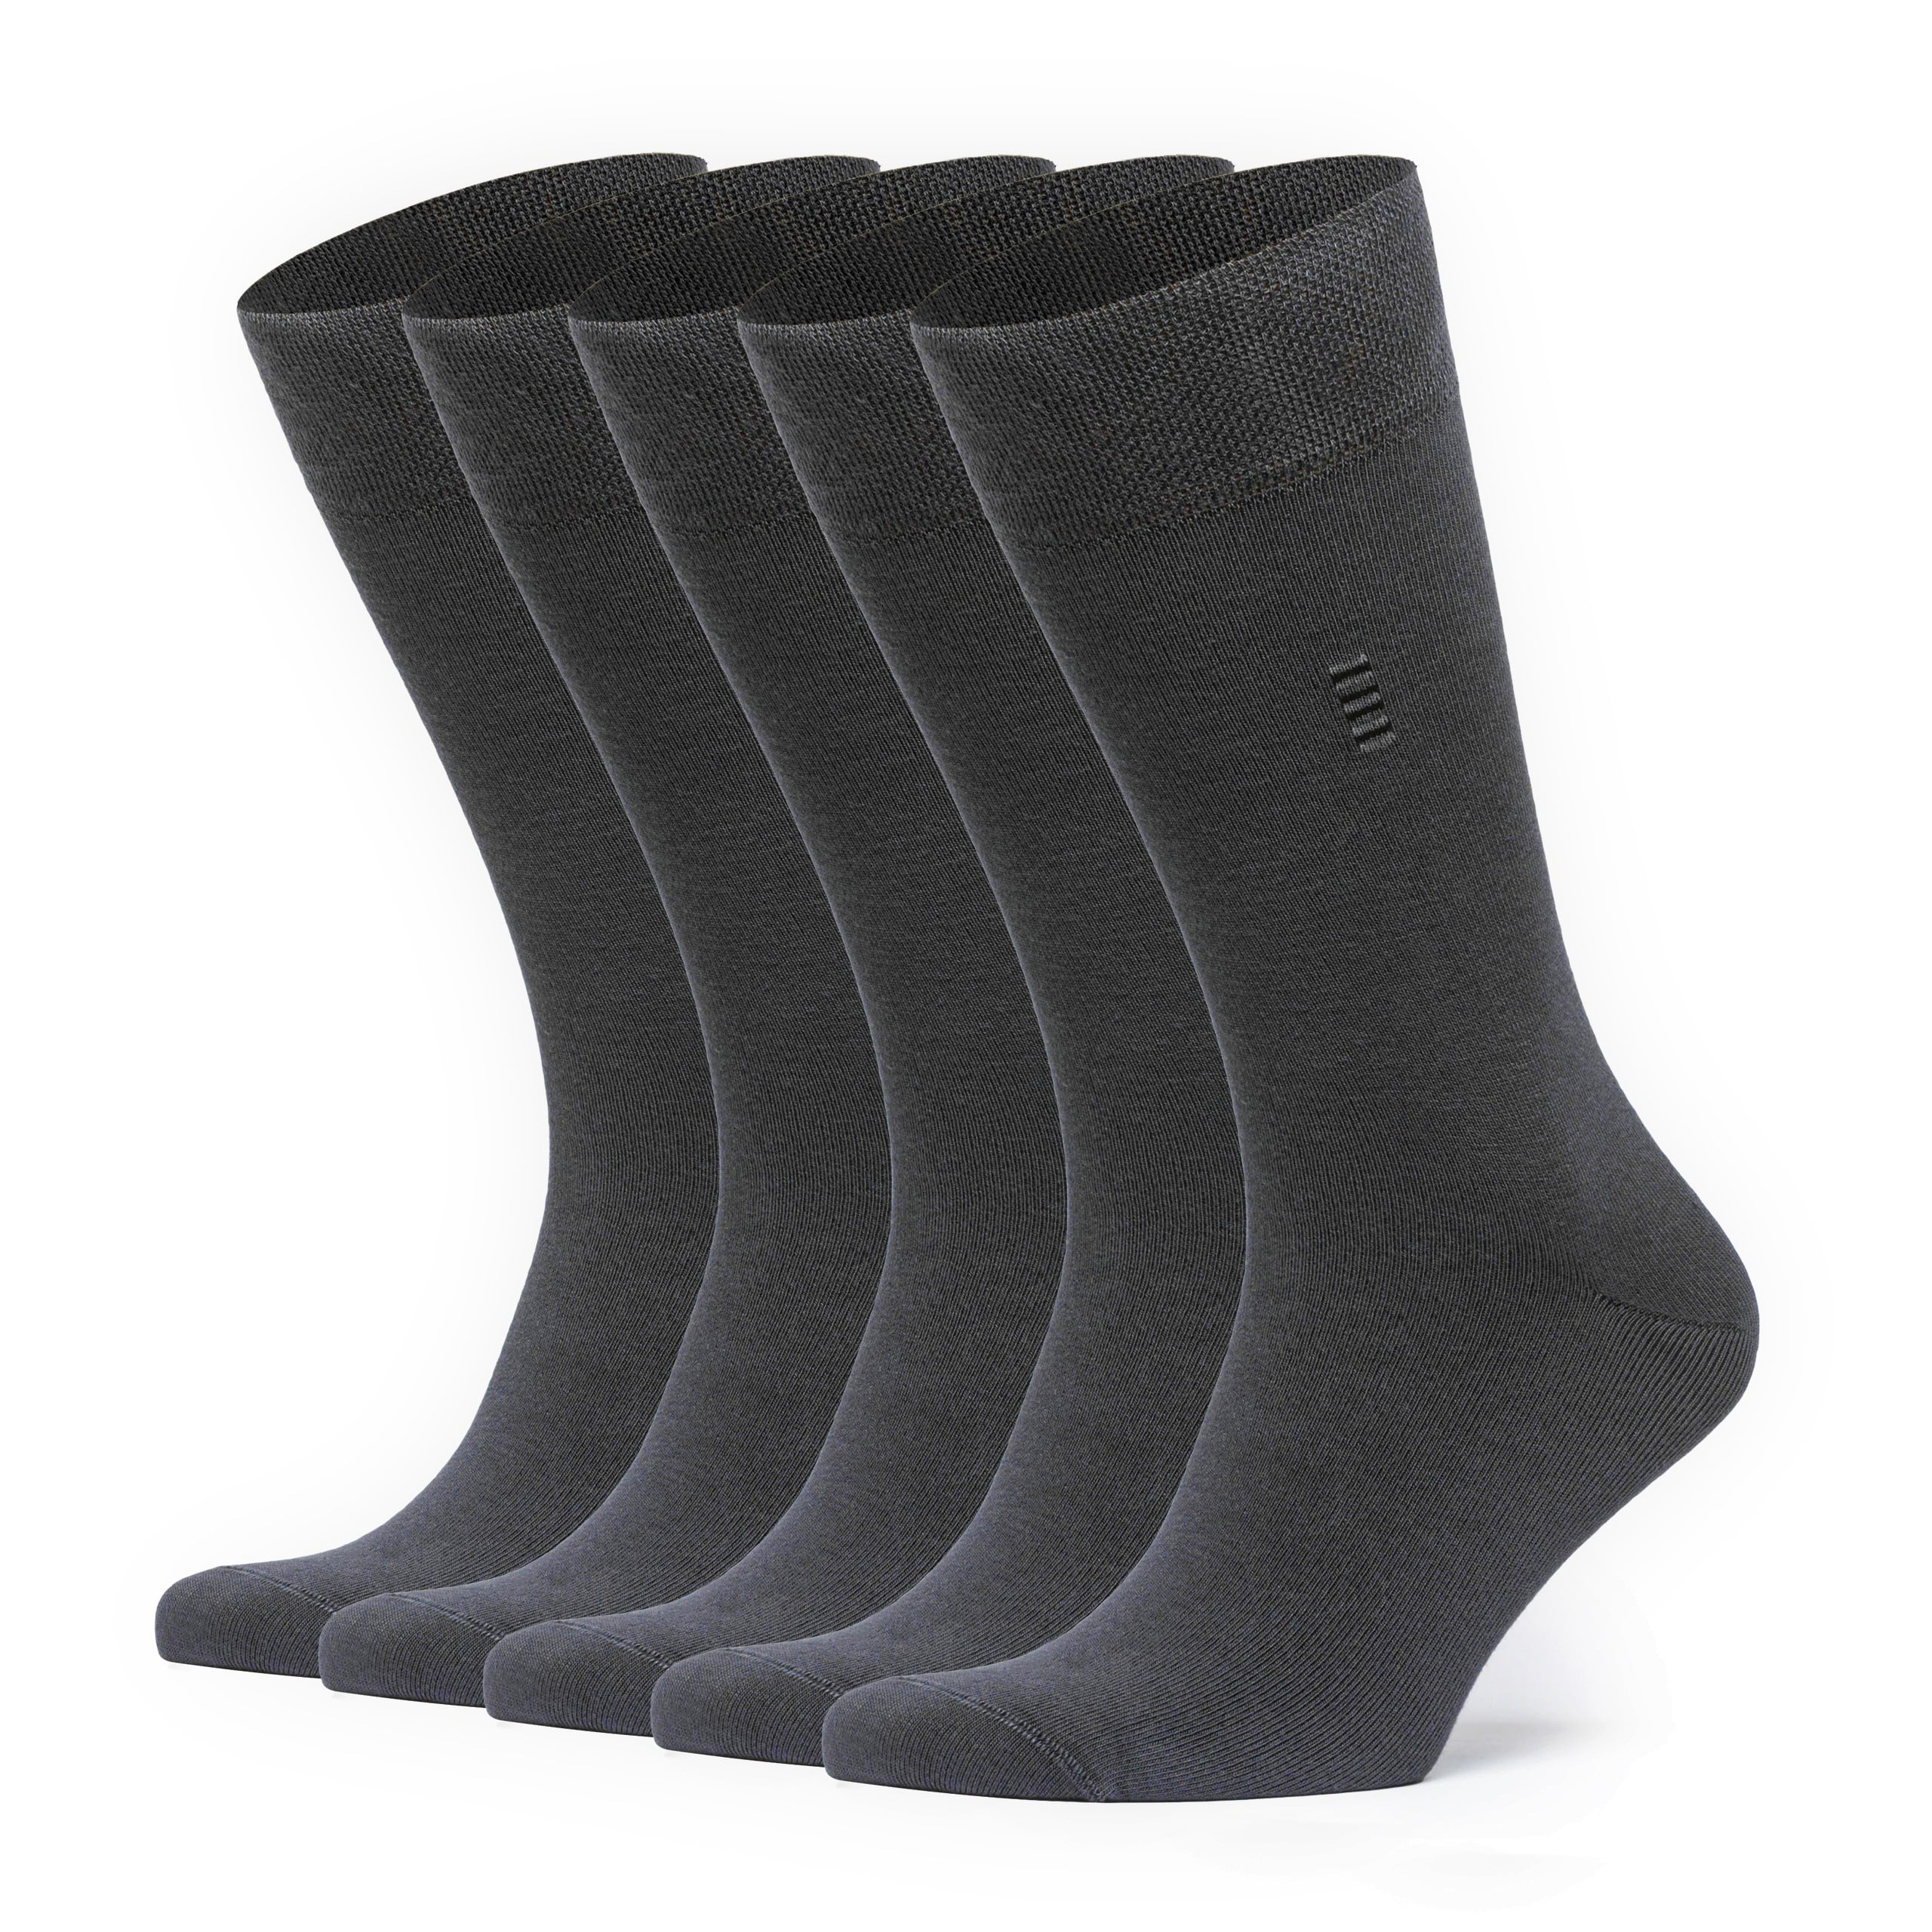 VRD SOCKS Mens Dress Socks - Bamboo Socks for Men - 5-Pack - Size 9-11 /  11-13 - Assorted Plain 2